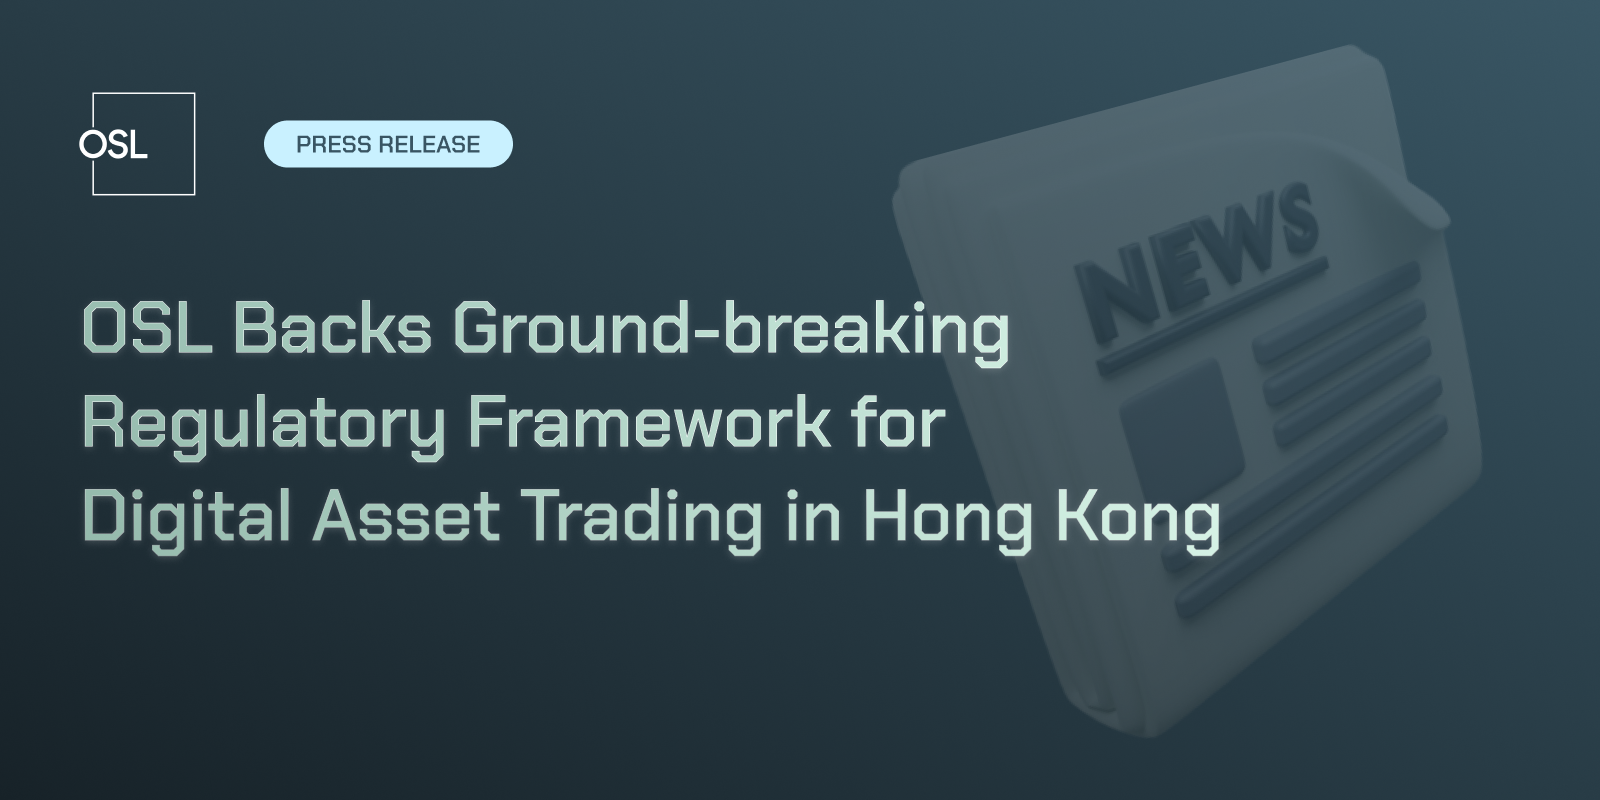 OSL Backs Ground-breaking Regulatory Framework for Digital Asset Trading in Hong Kong